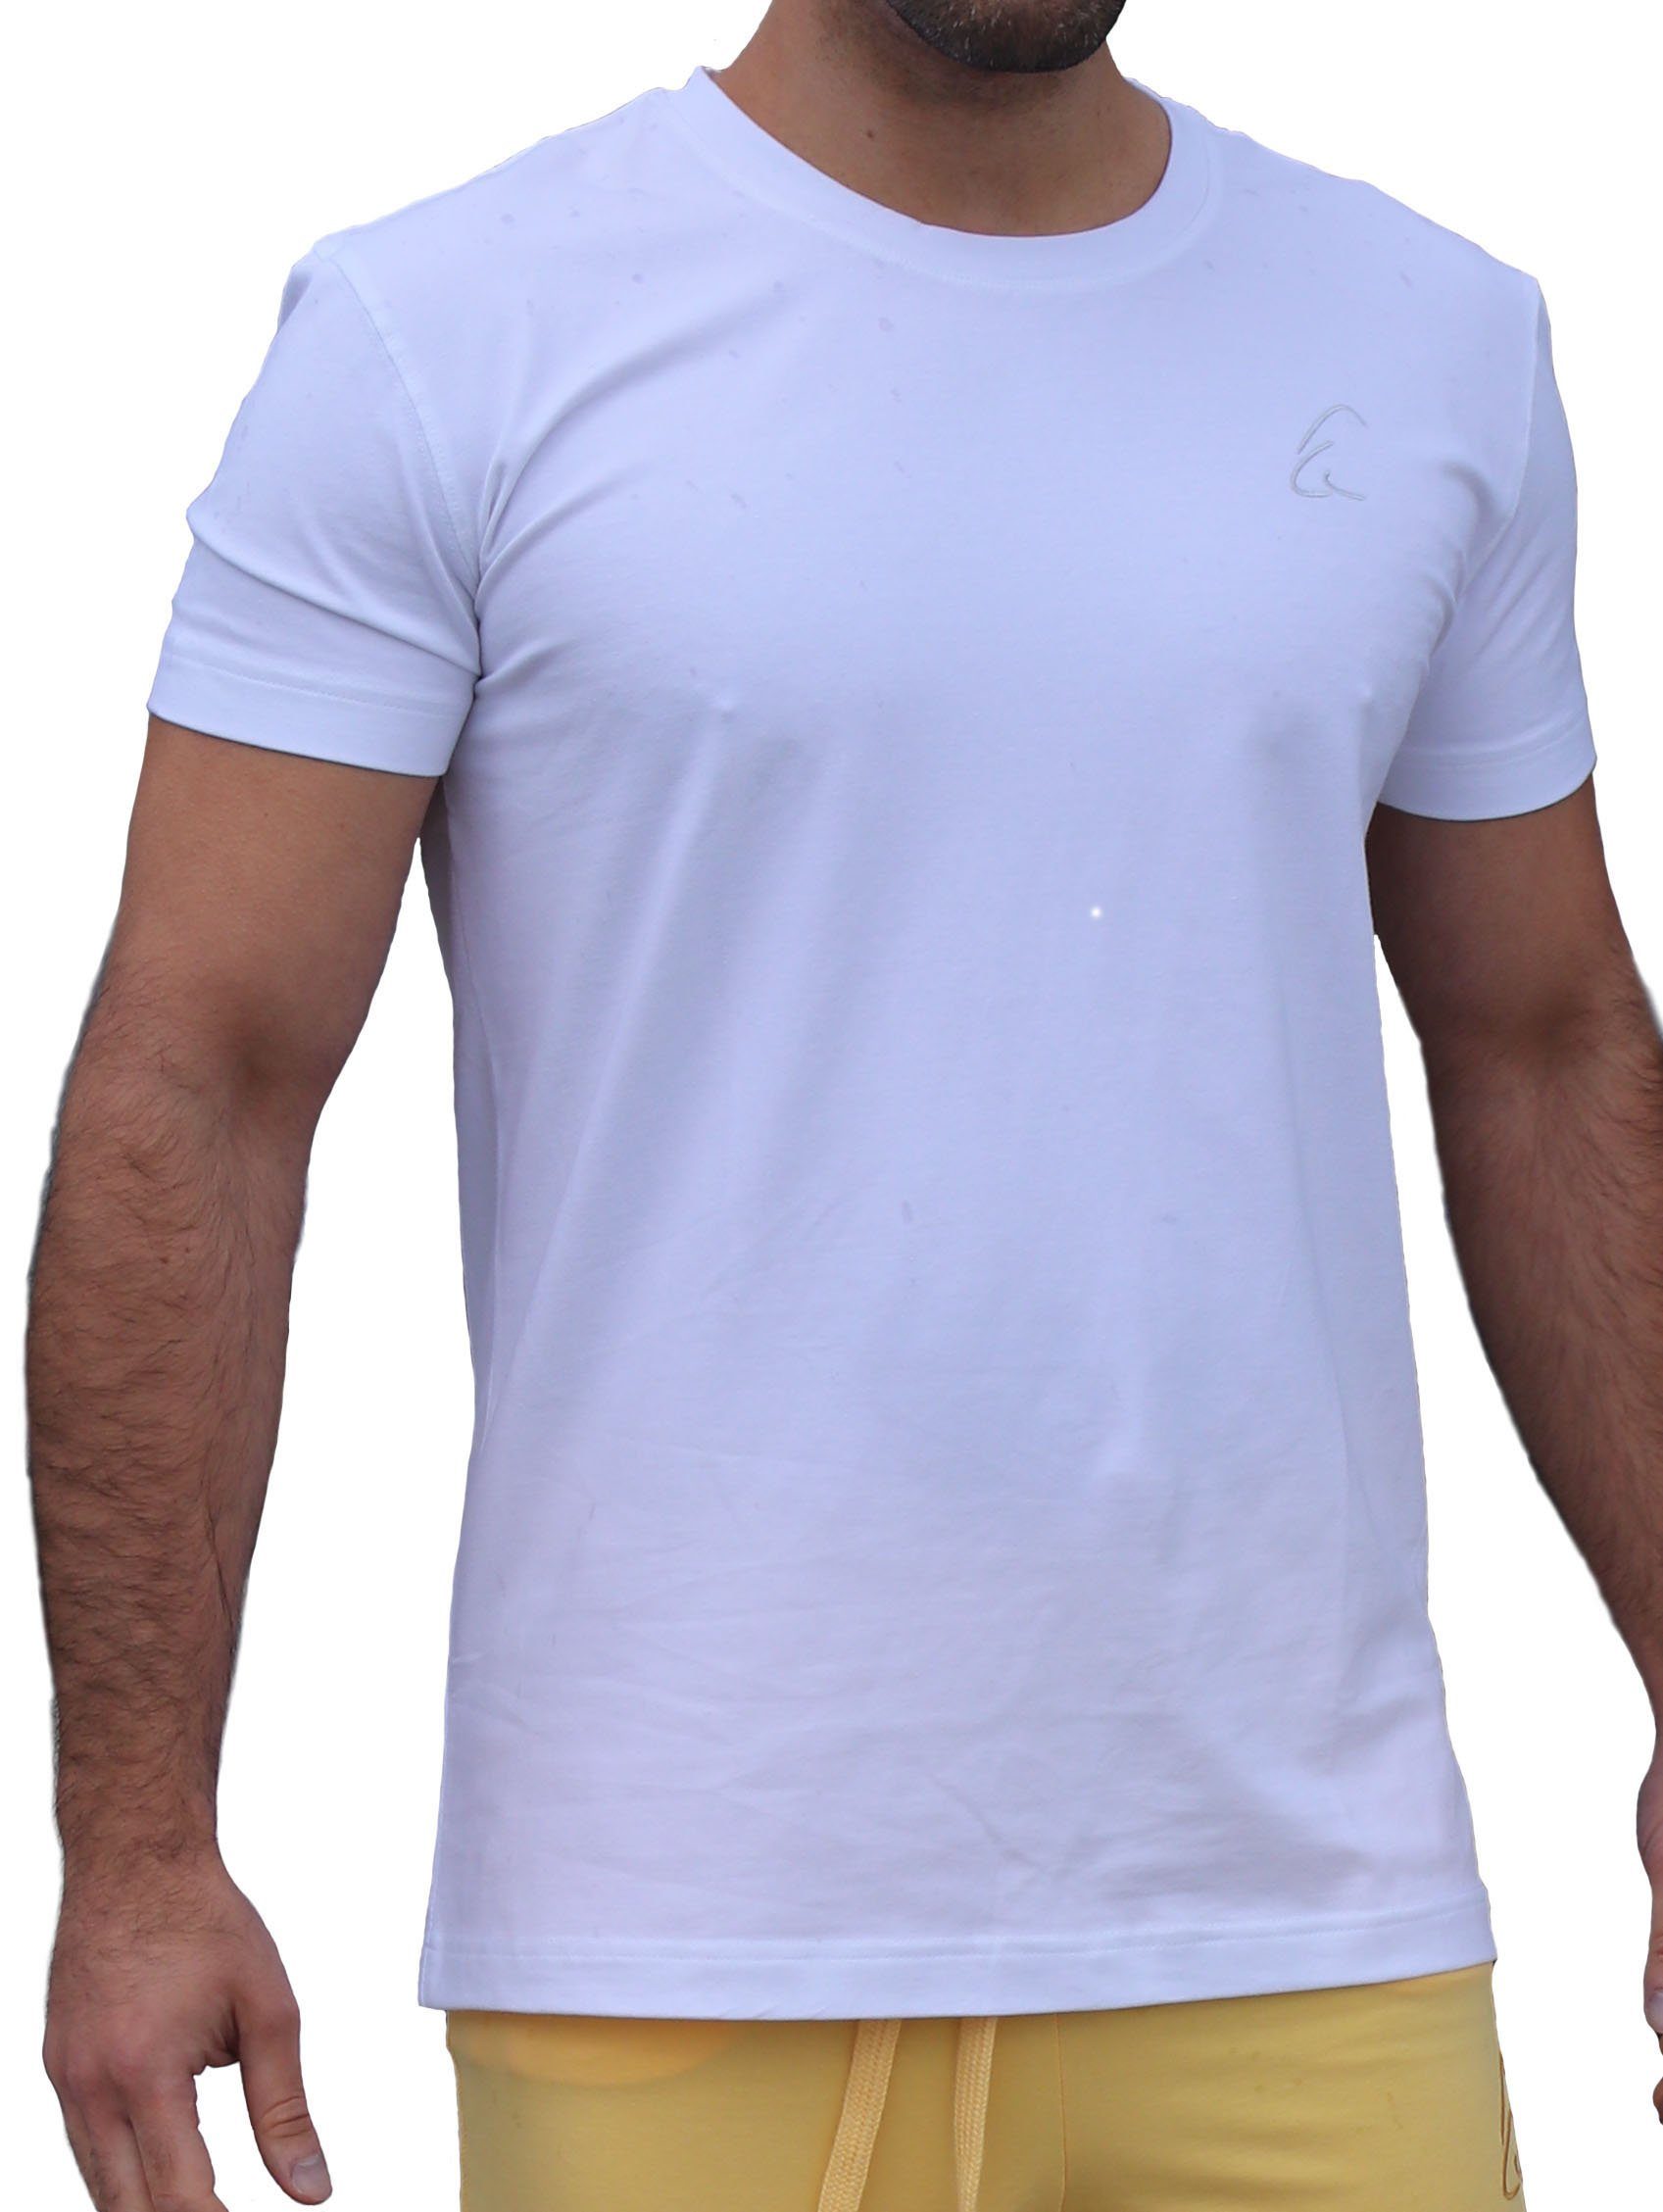 auch Herren Bhaalu im Yogashirt T-Shirt Sommer ESPARTO leicht Schneeweiß gut geeignet unisex, kühlend, für